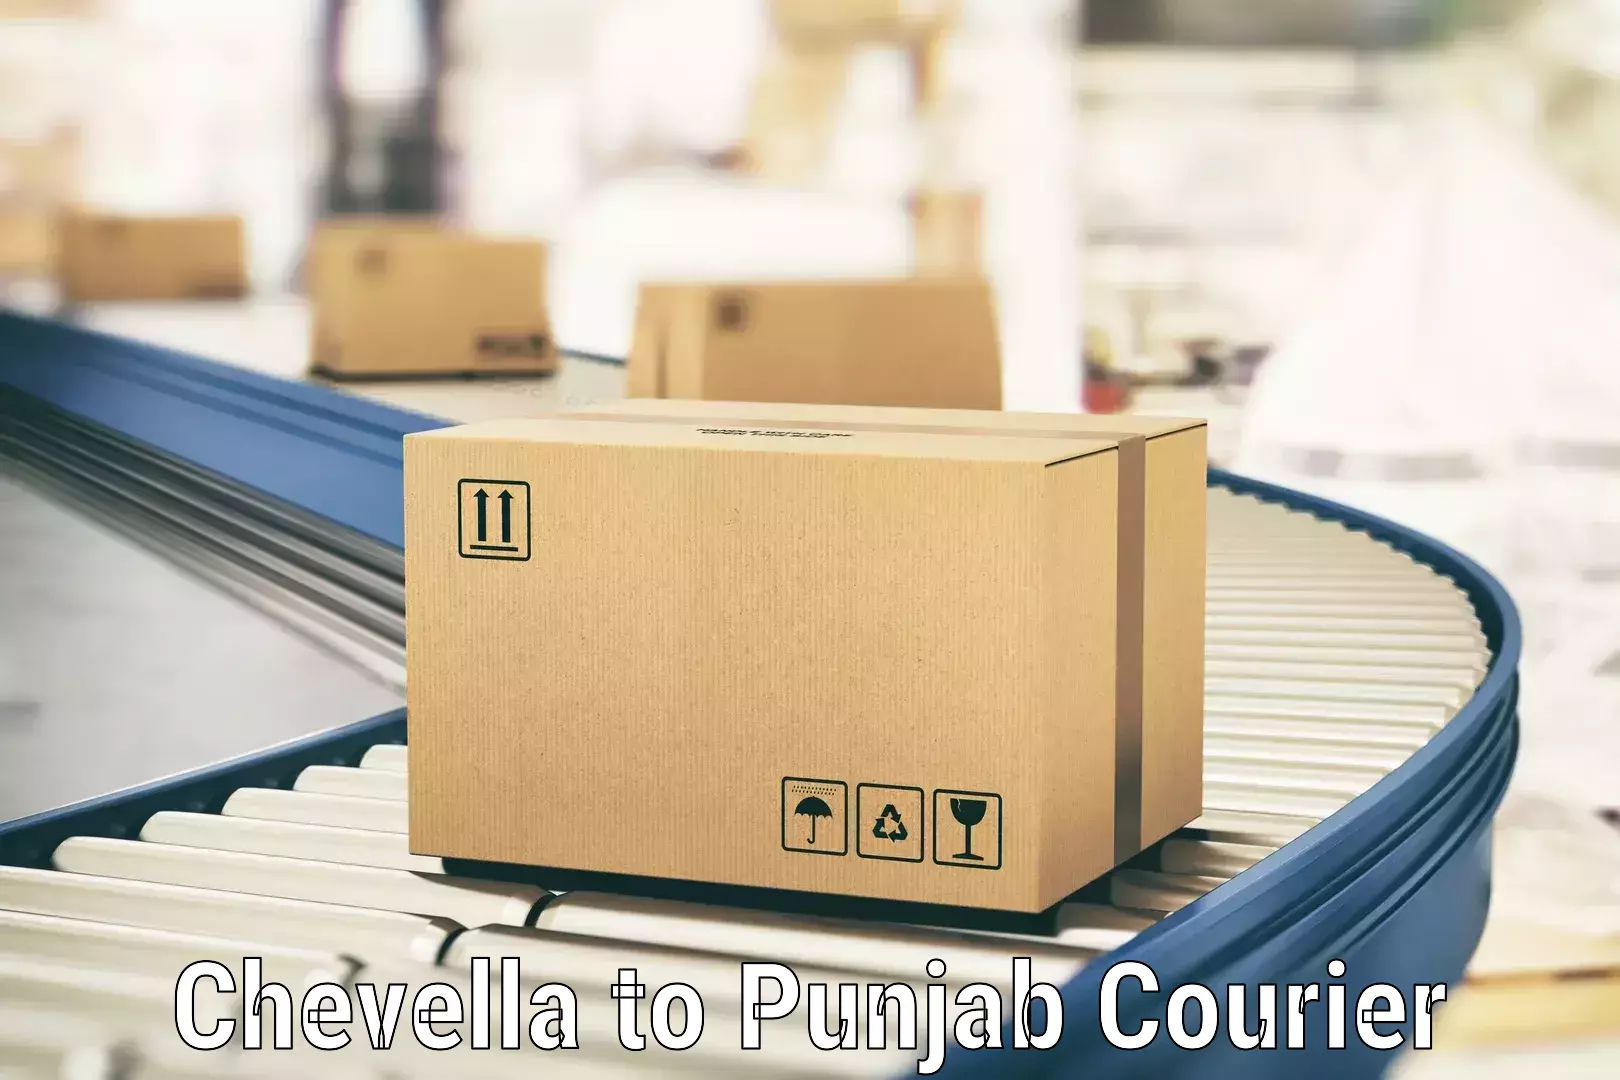 Door-to-door shipment Chevella to Punjab